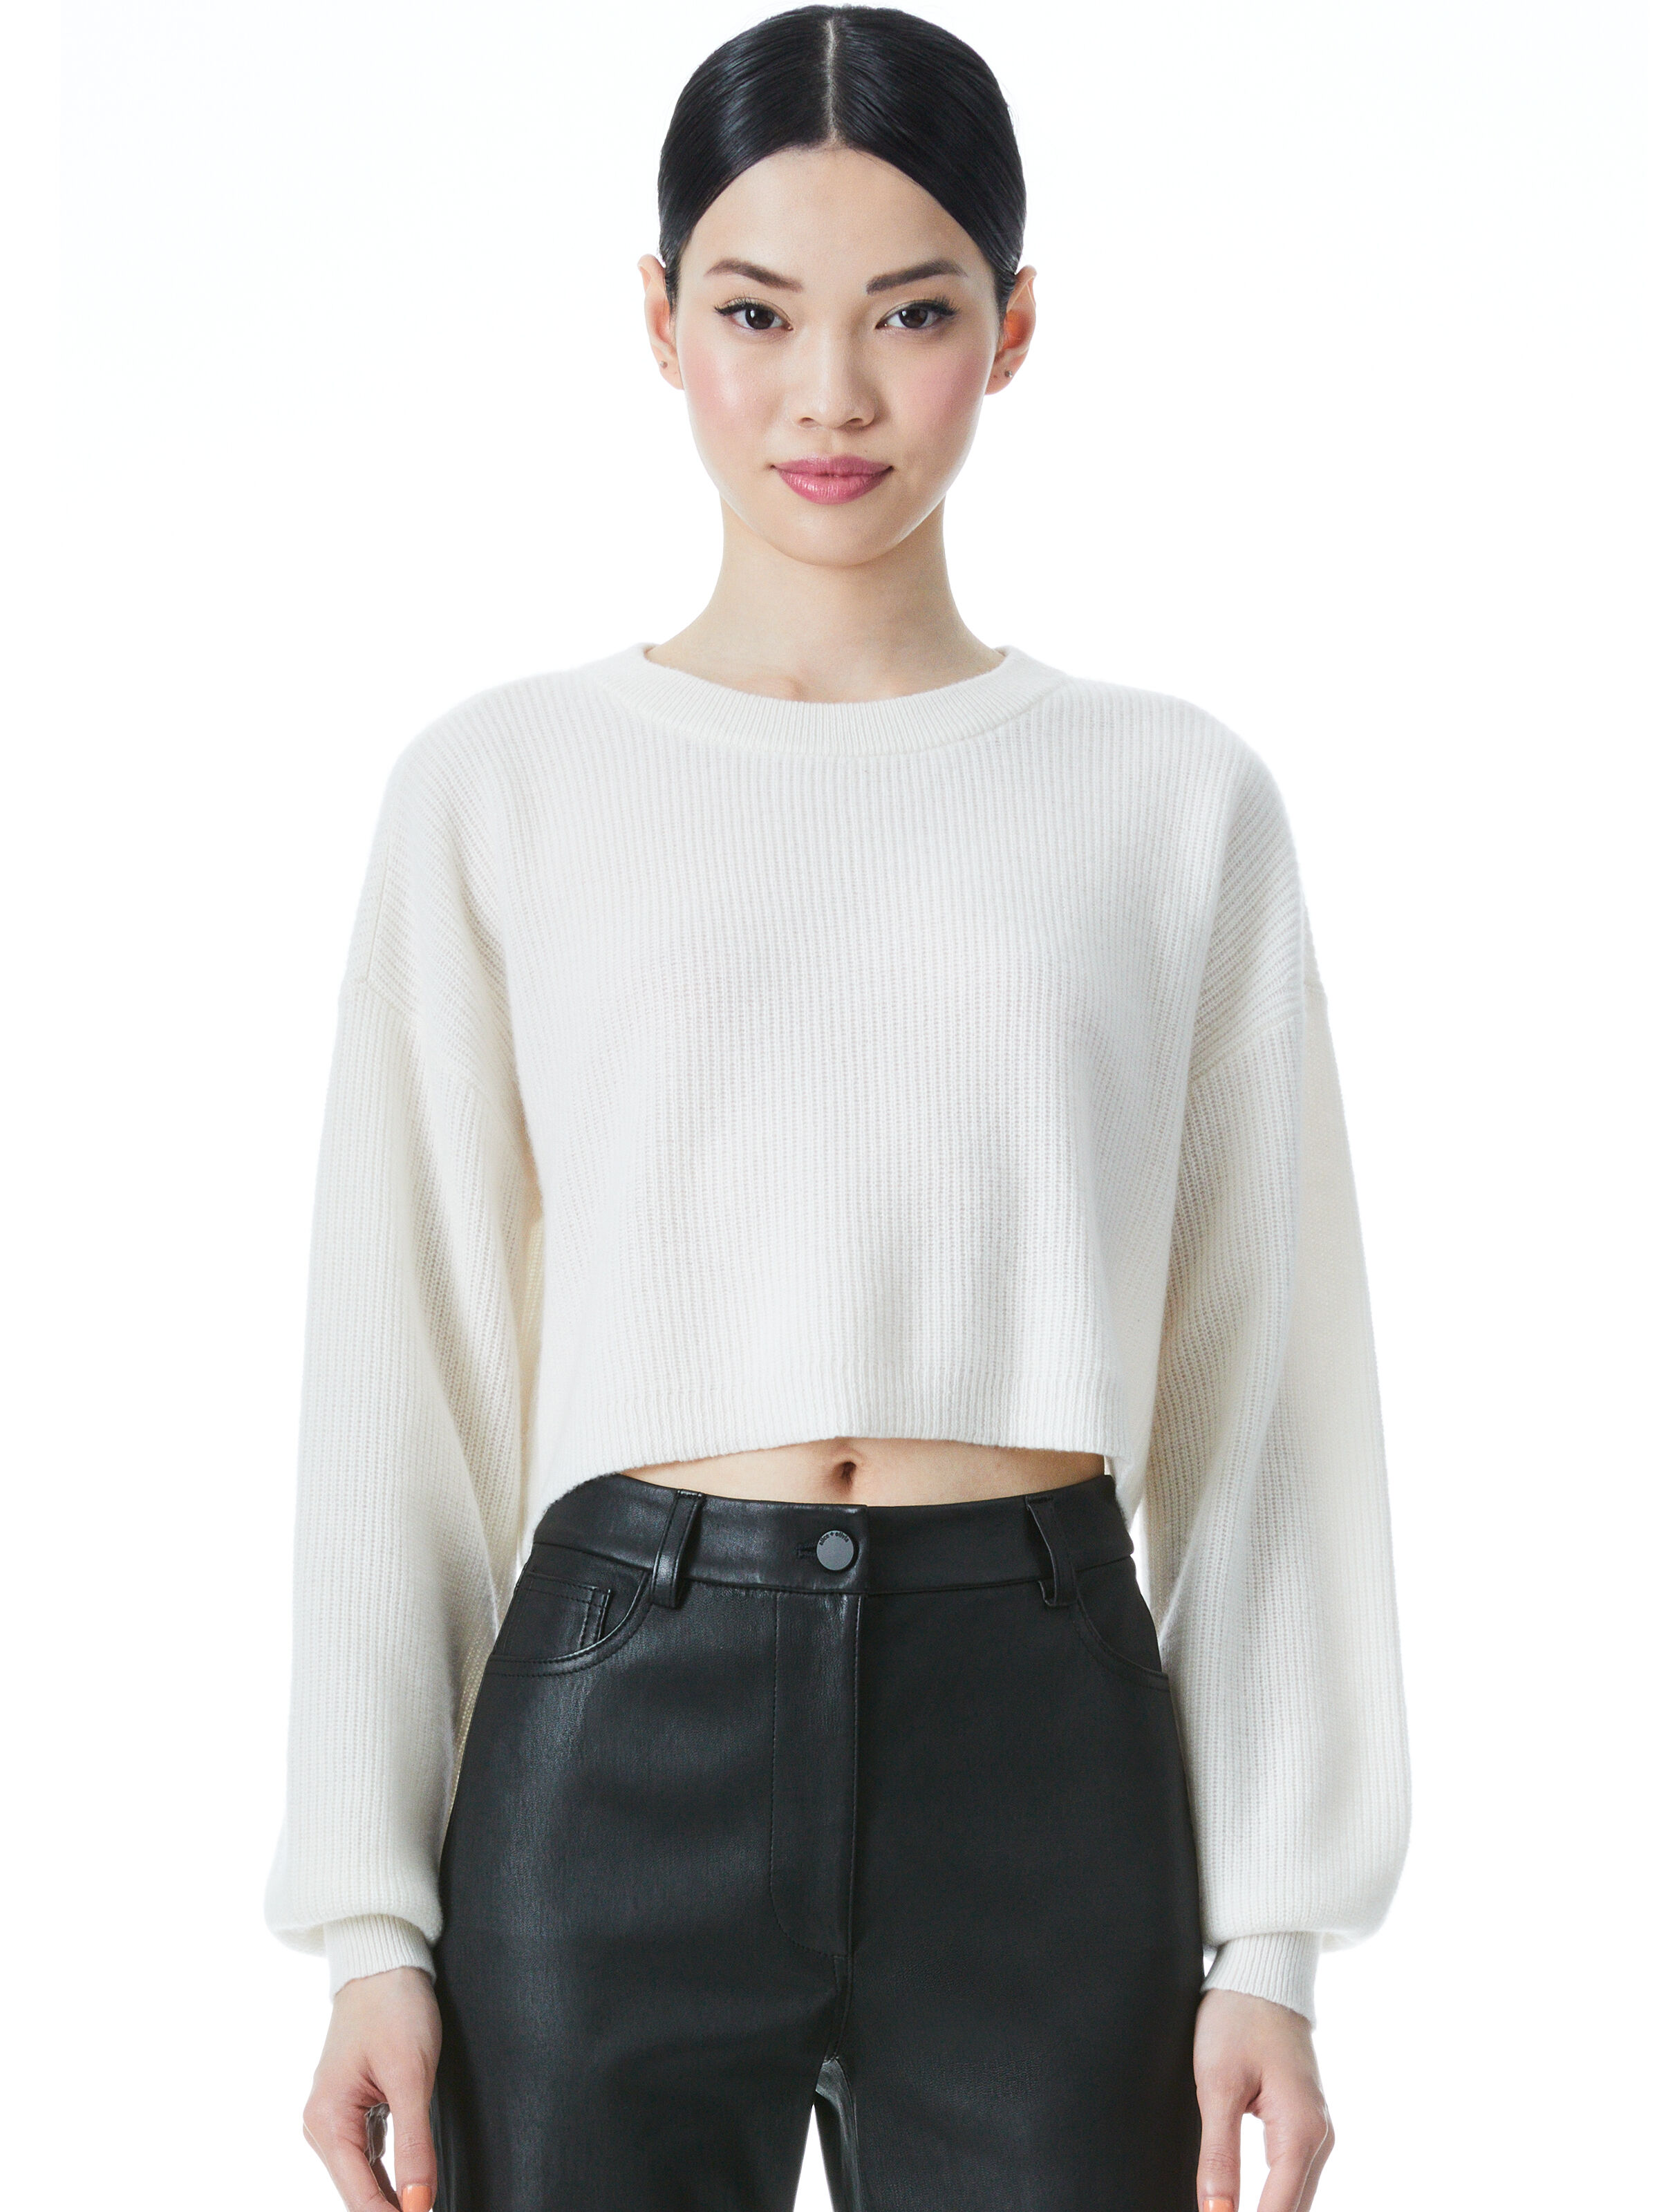 olivia Rosi Embellished Sweater Knit Top Black Size XS NWOT Alice